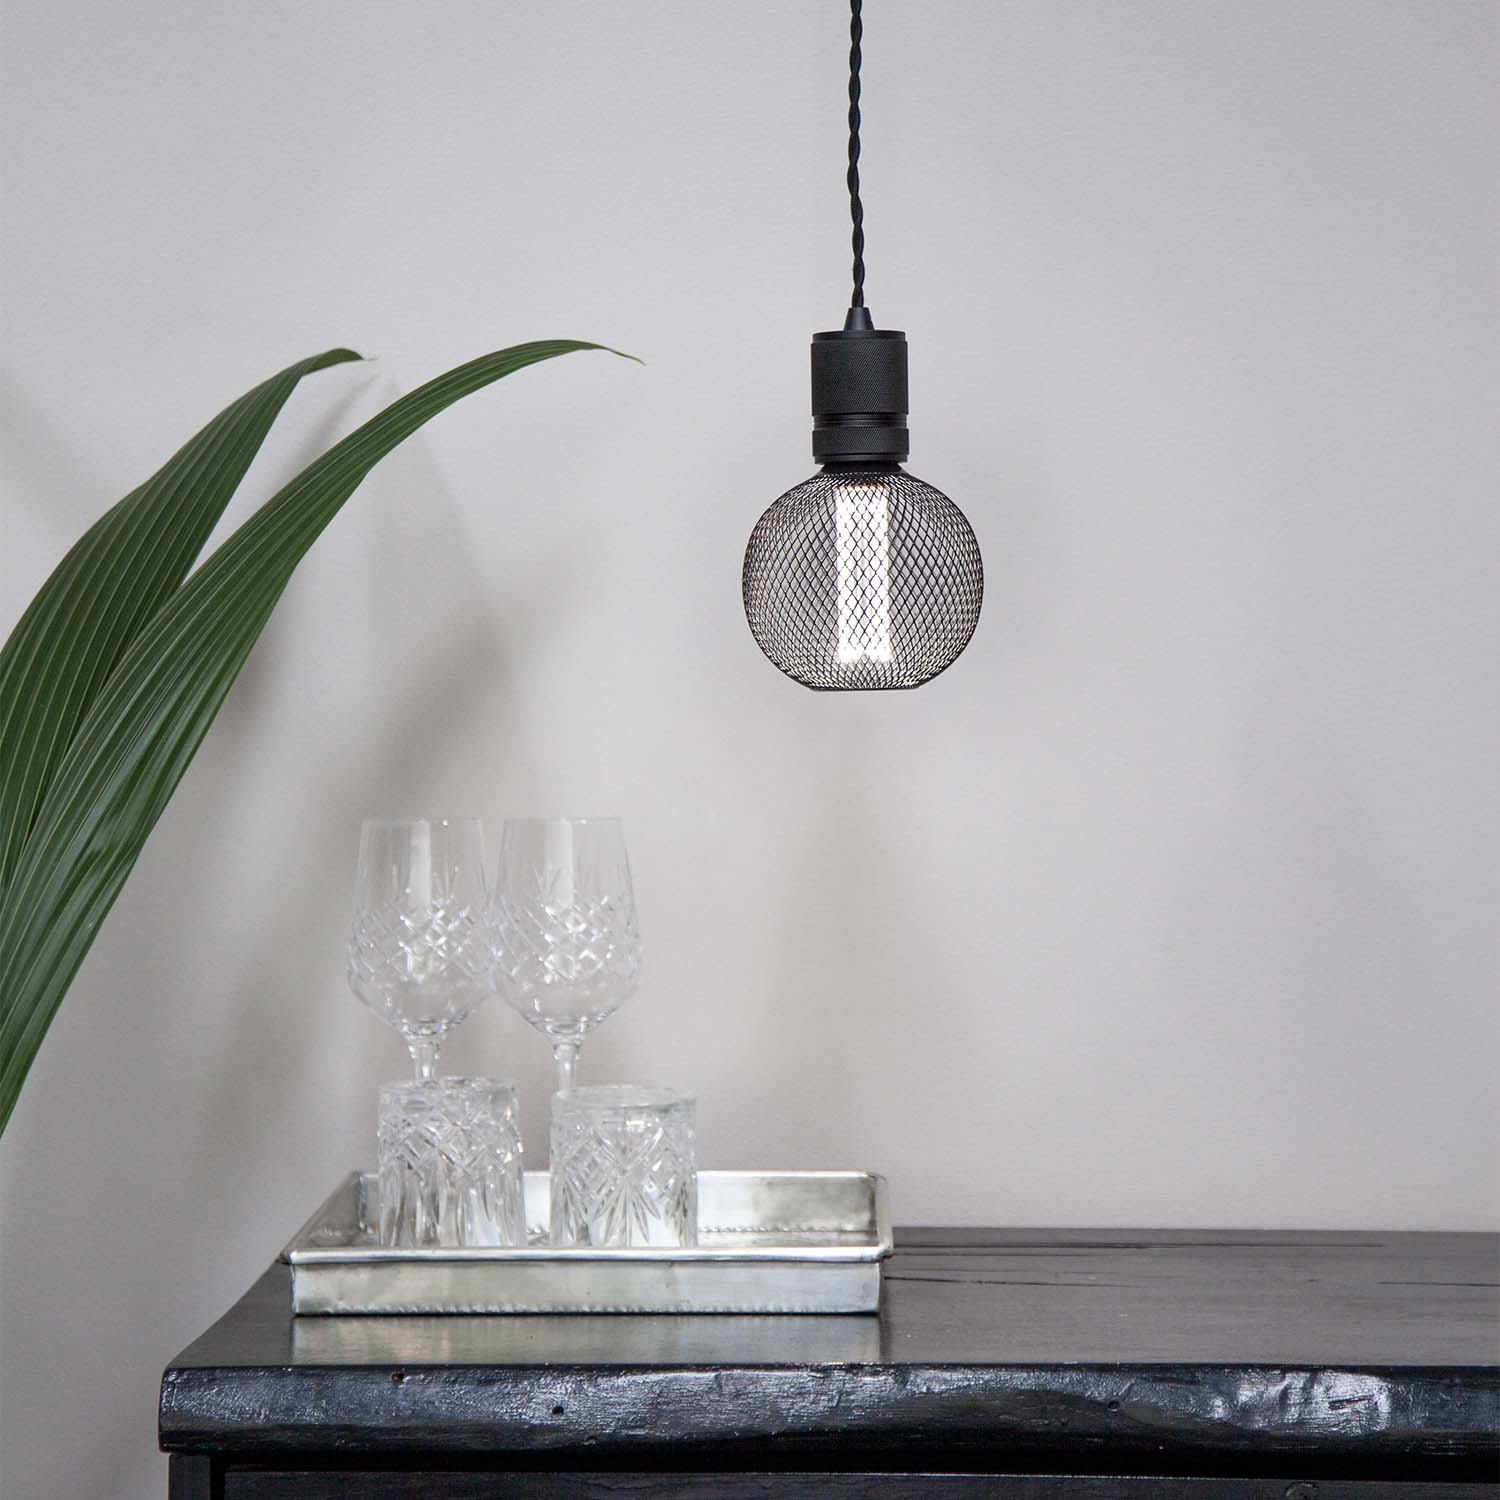 Gitter - E27 LED-Glühbirne im schwarzen Gitterdesign